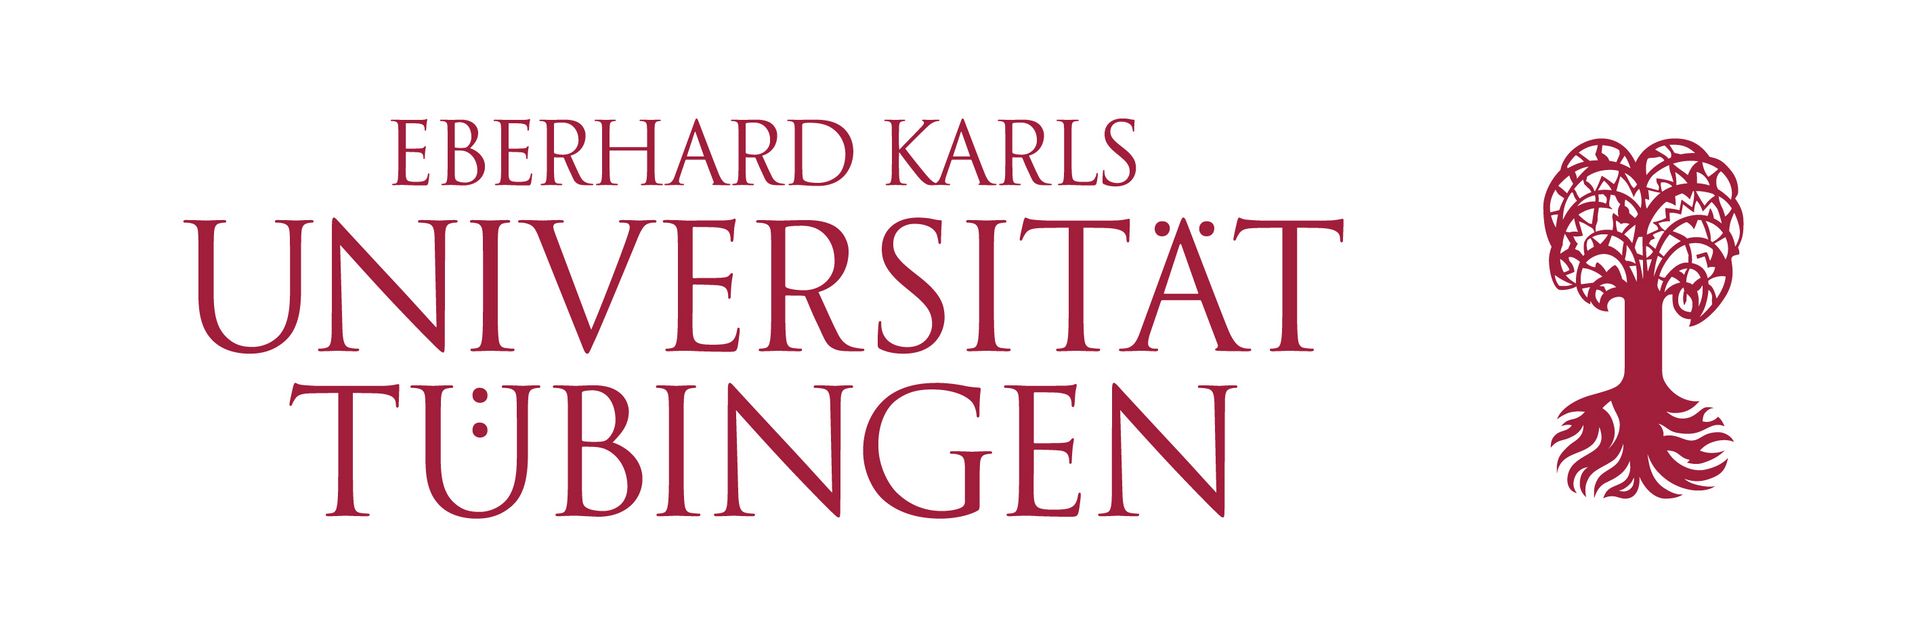 Source: Eberhard Karl University of Tübingen